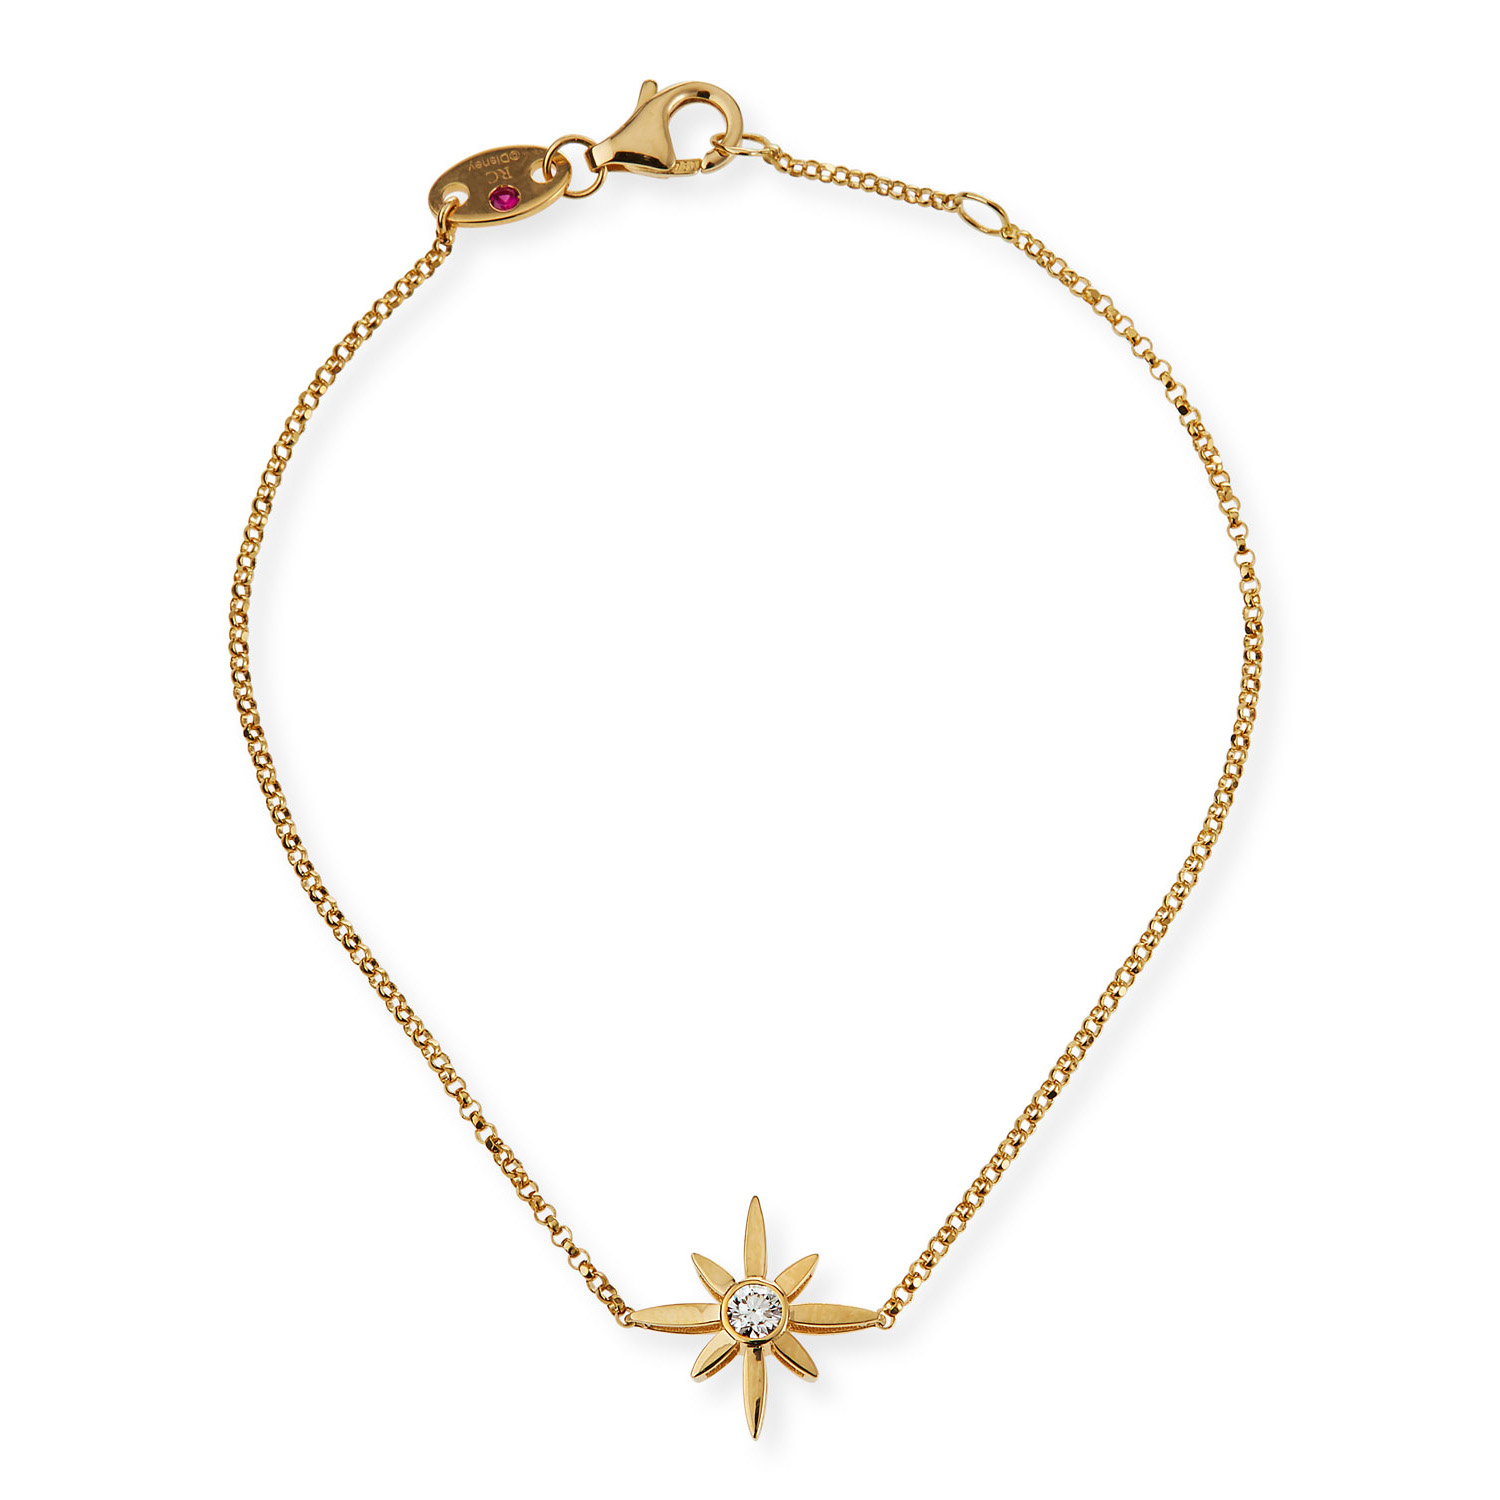 Venta al por mayor de joyería OEM/ODM, pulsera de plata con estrella personalizada en diseño vermeil de oro de 18k y crea tus propias joyas